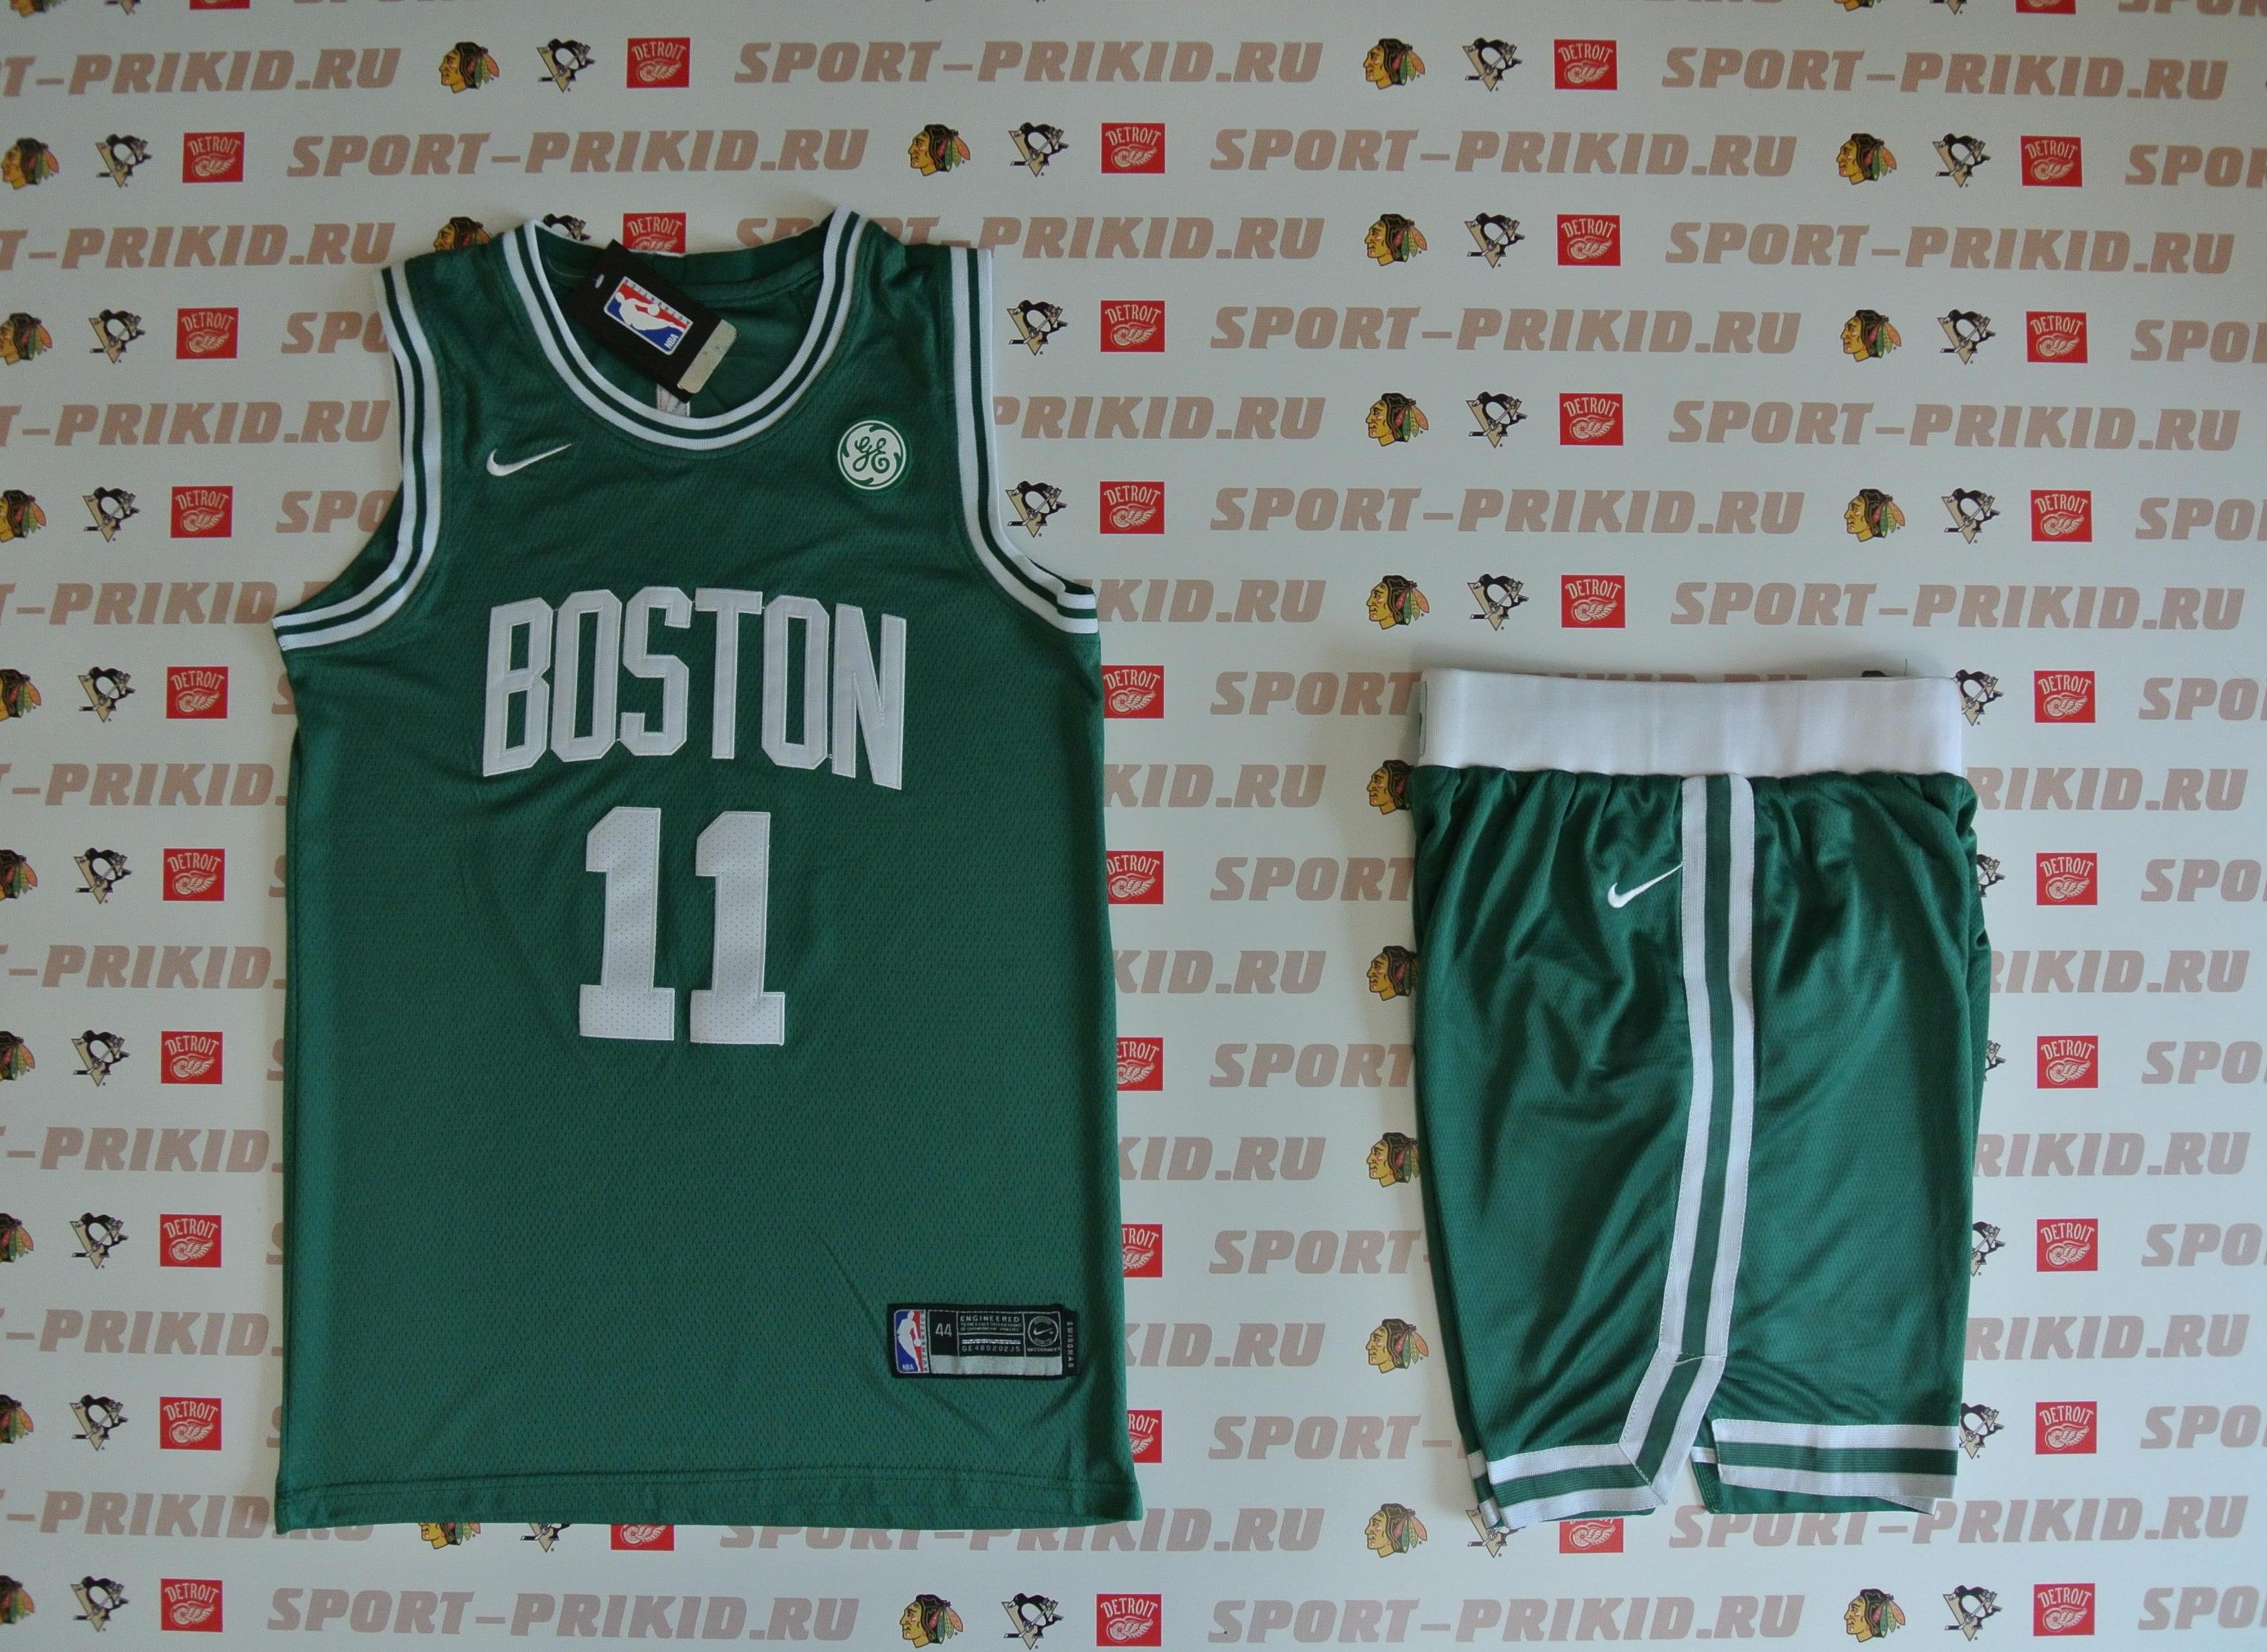 Купить Boston Celtics выгодно